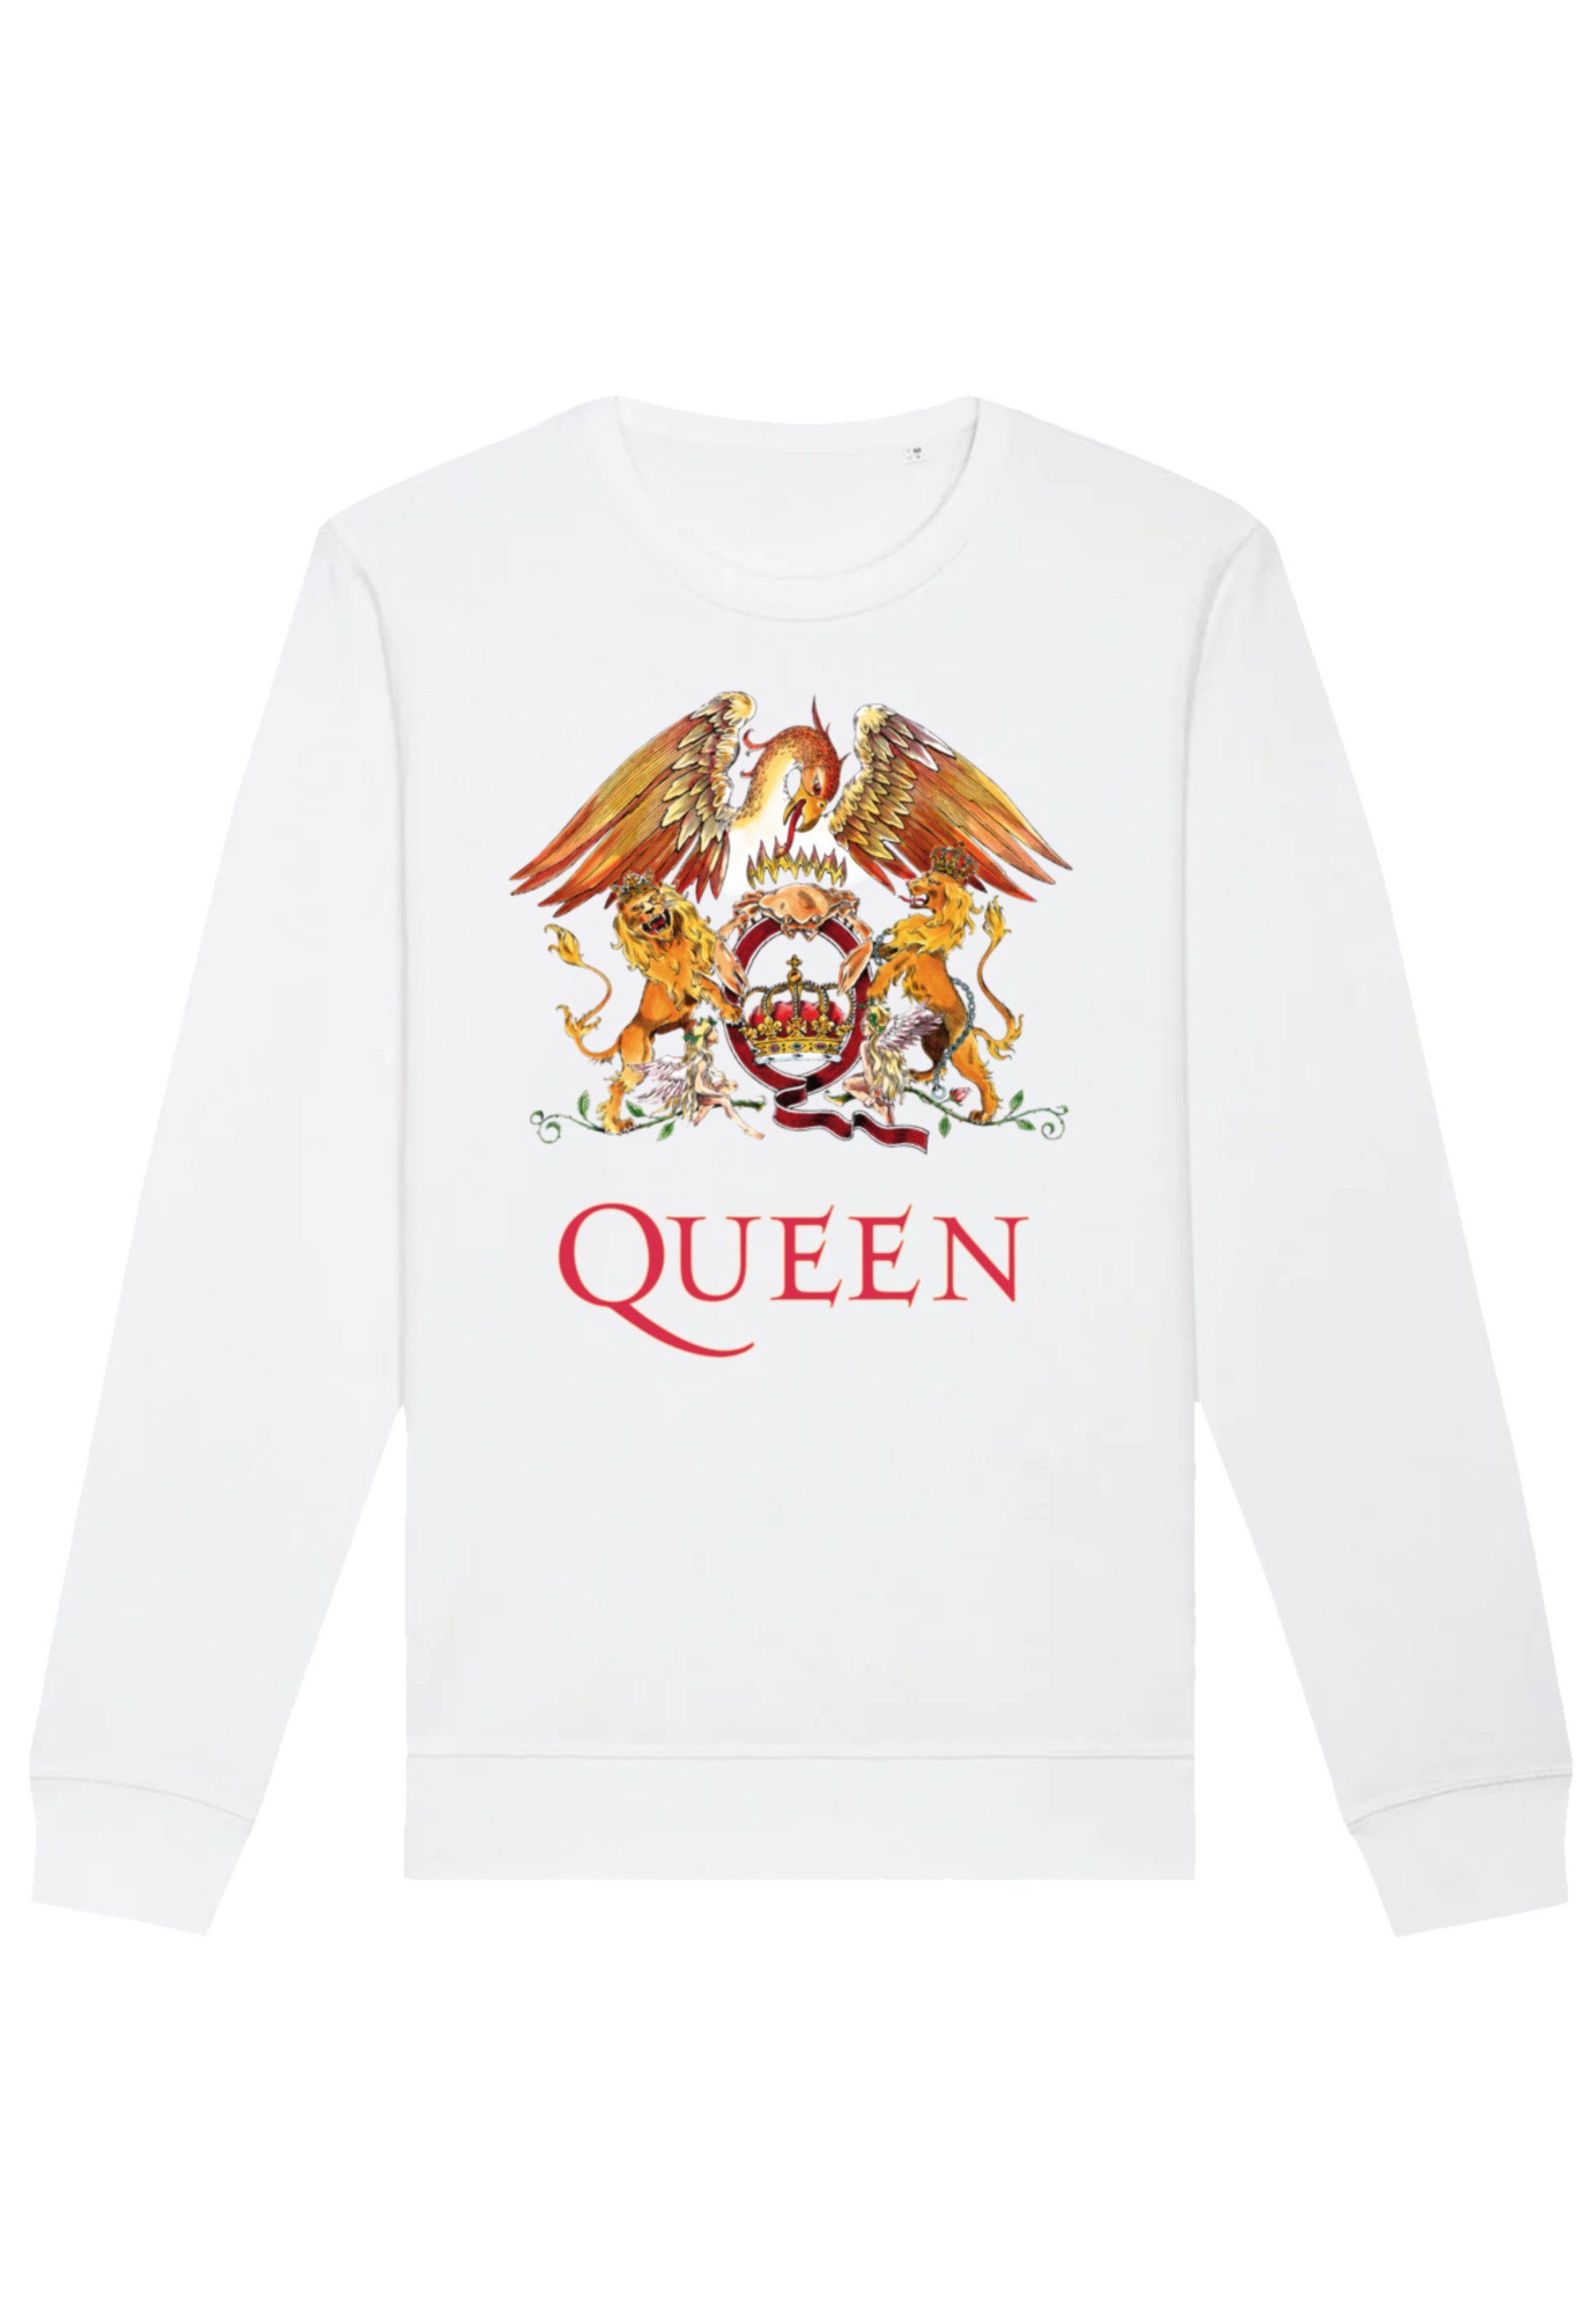 vielseitig Queen Sweatshirt Classic Print, kombinierbar F4NT4STIC Komfortabel und Crest